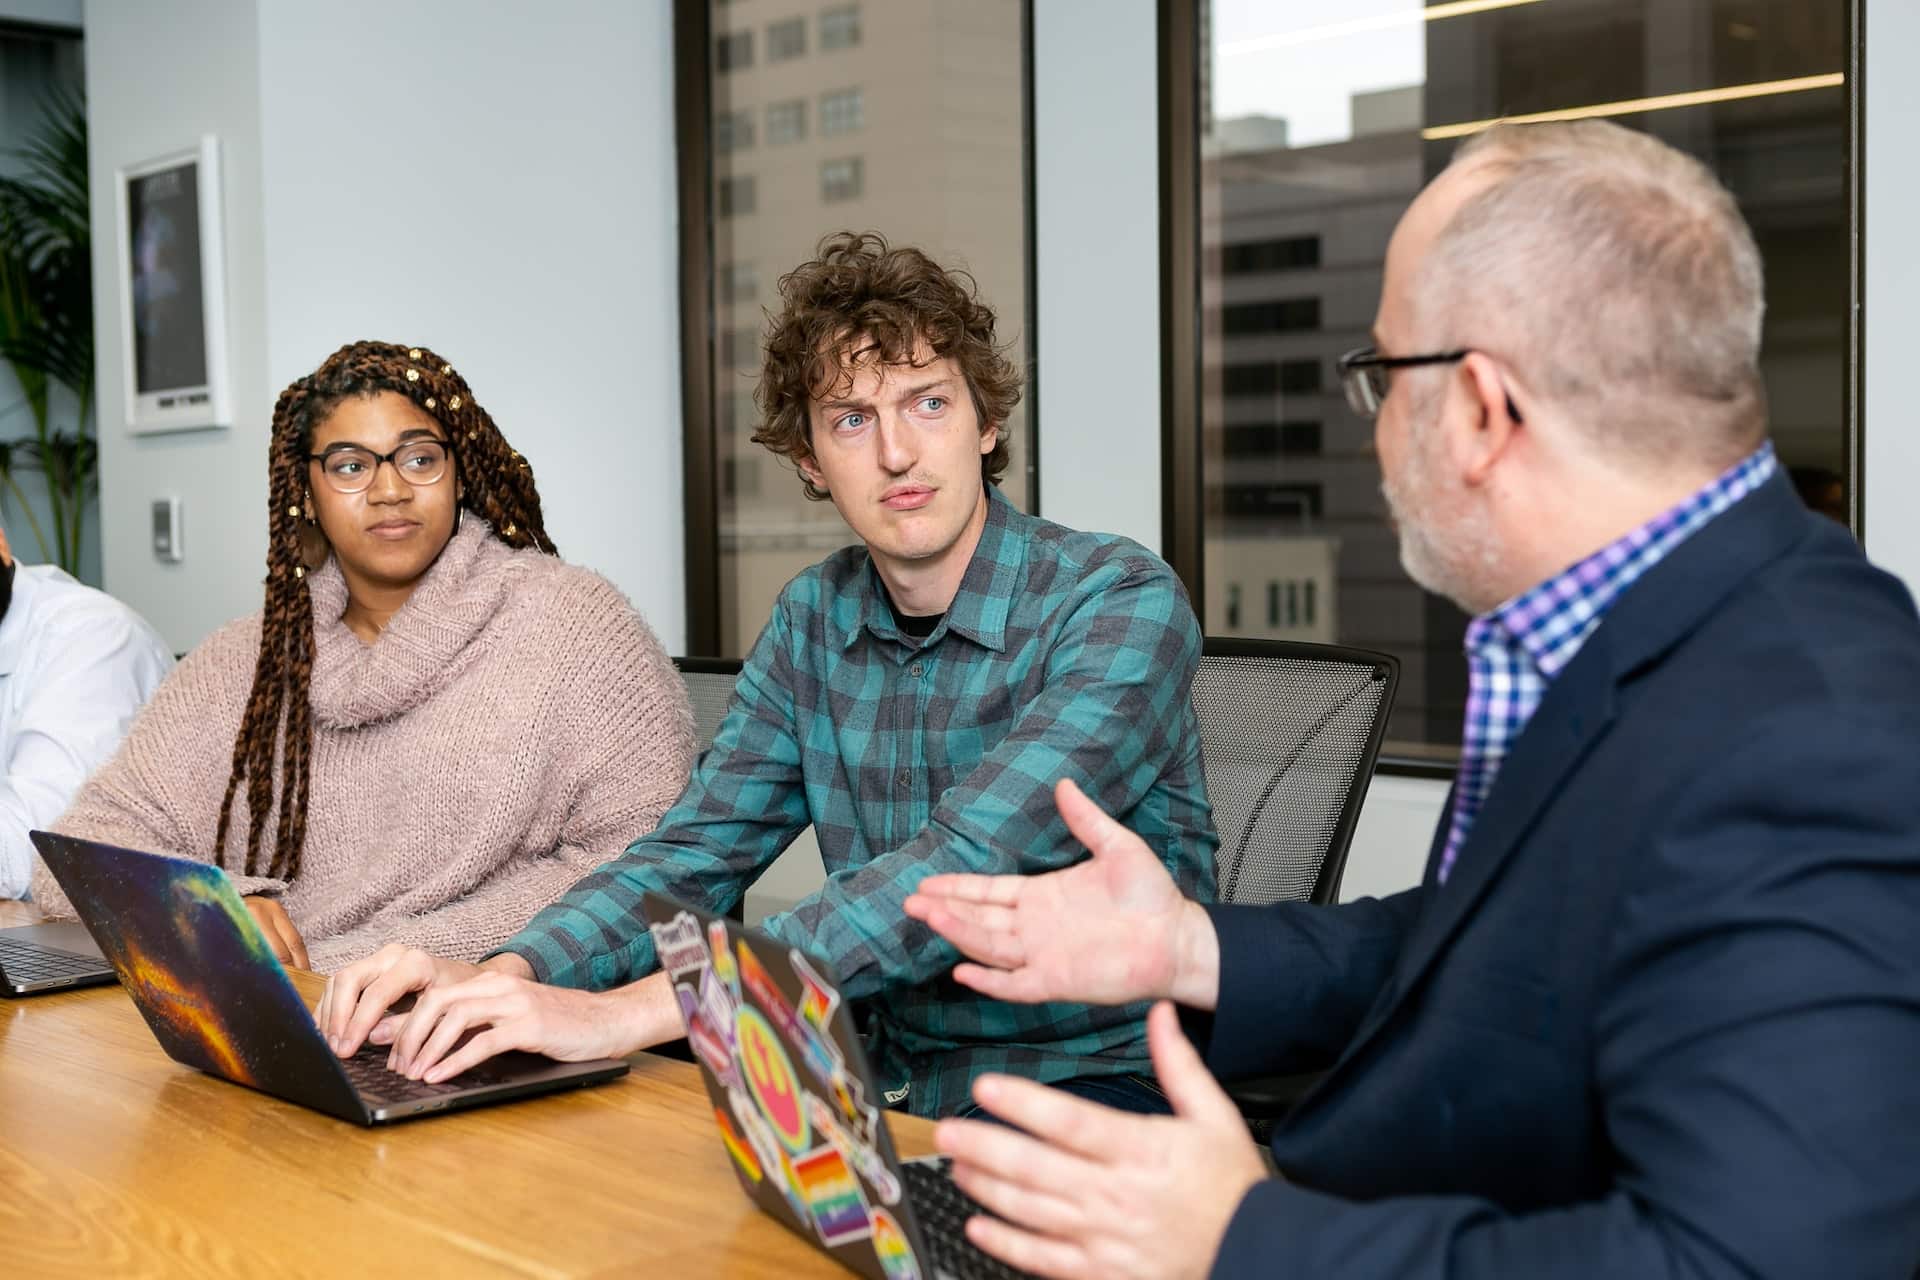 A imagem mostra um homem branco, no papel de programador sênior, orientando demais profissionais da equipe, representados por uma mulher negra e um homem branco, ambos jovens